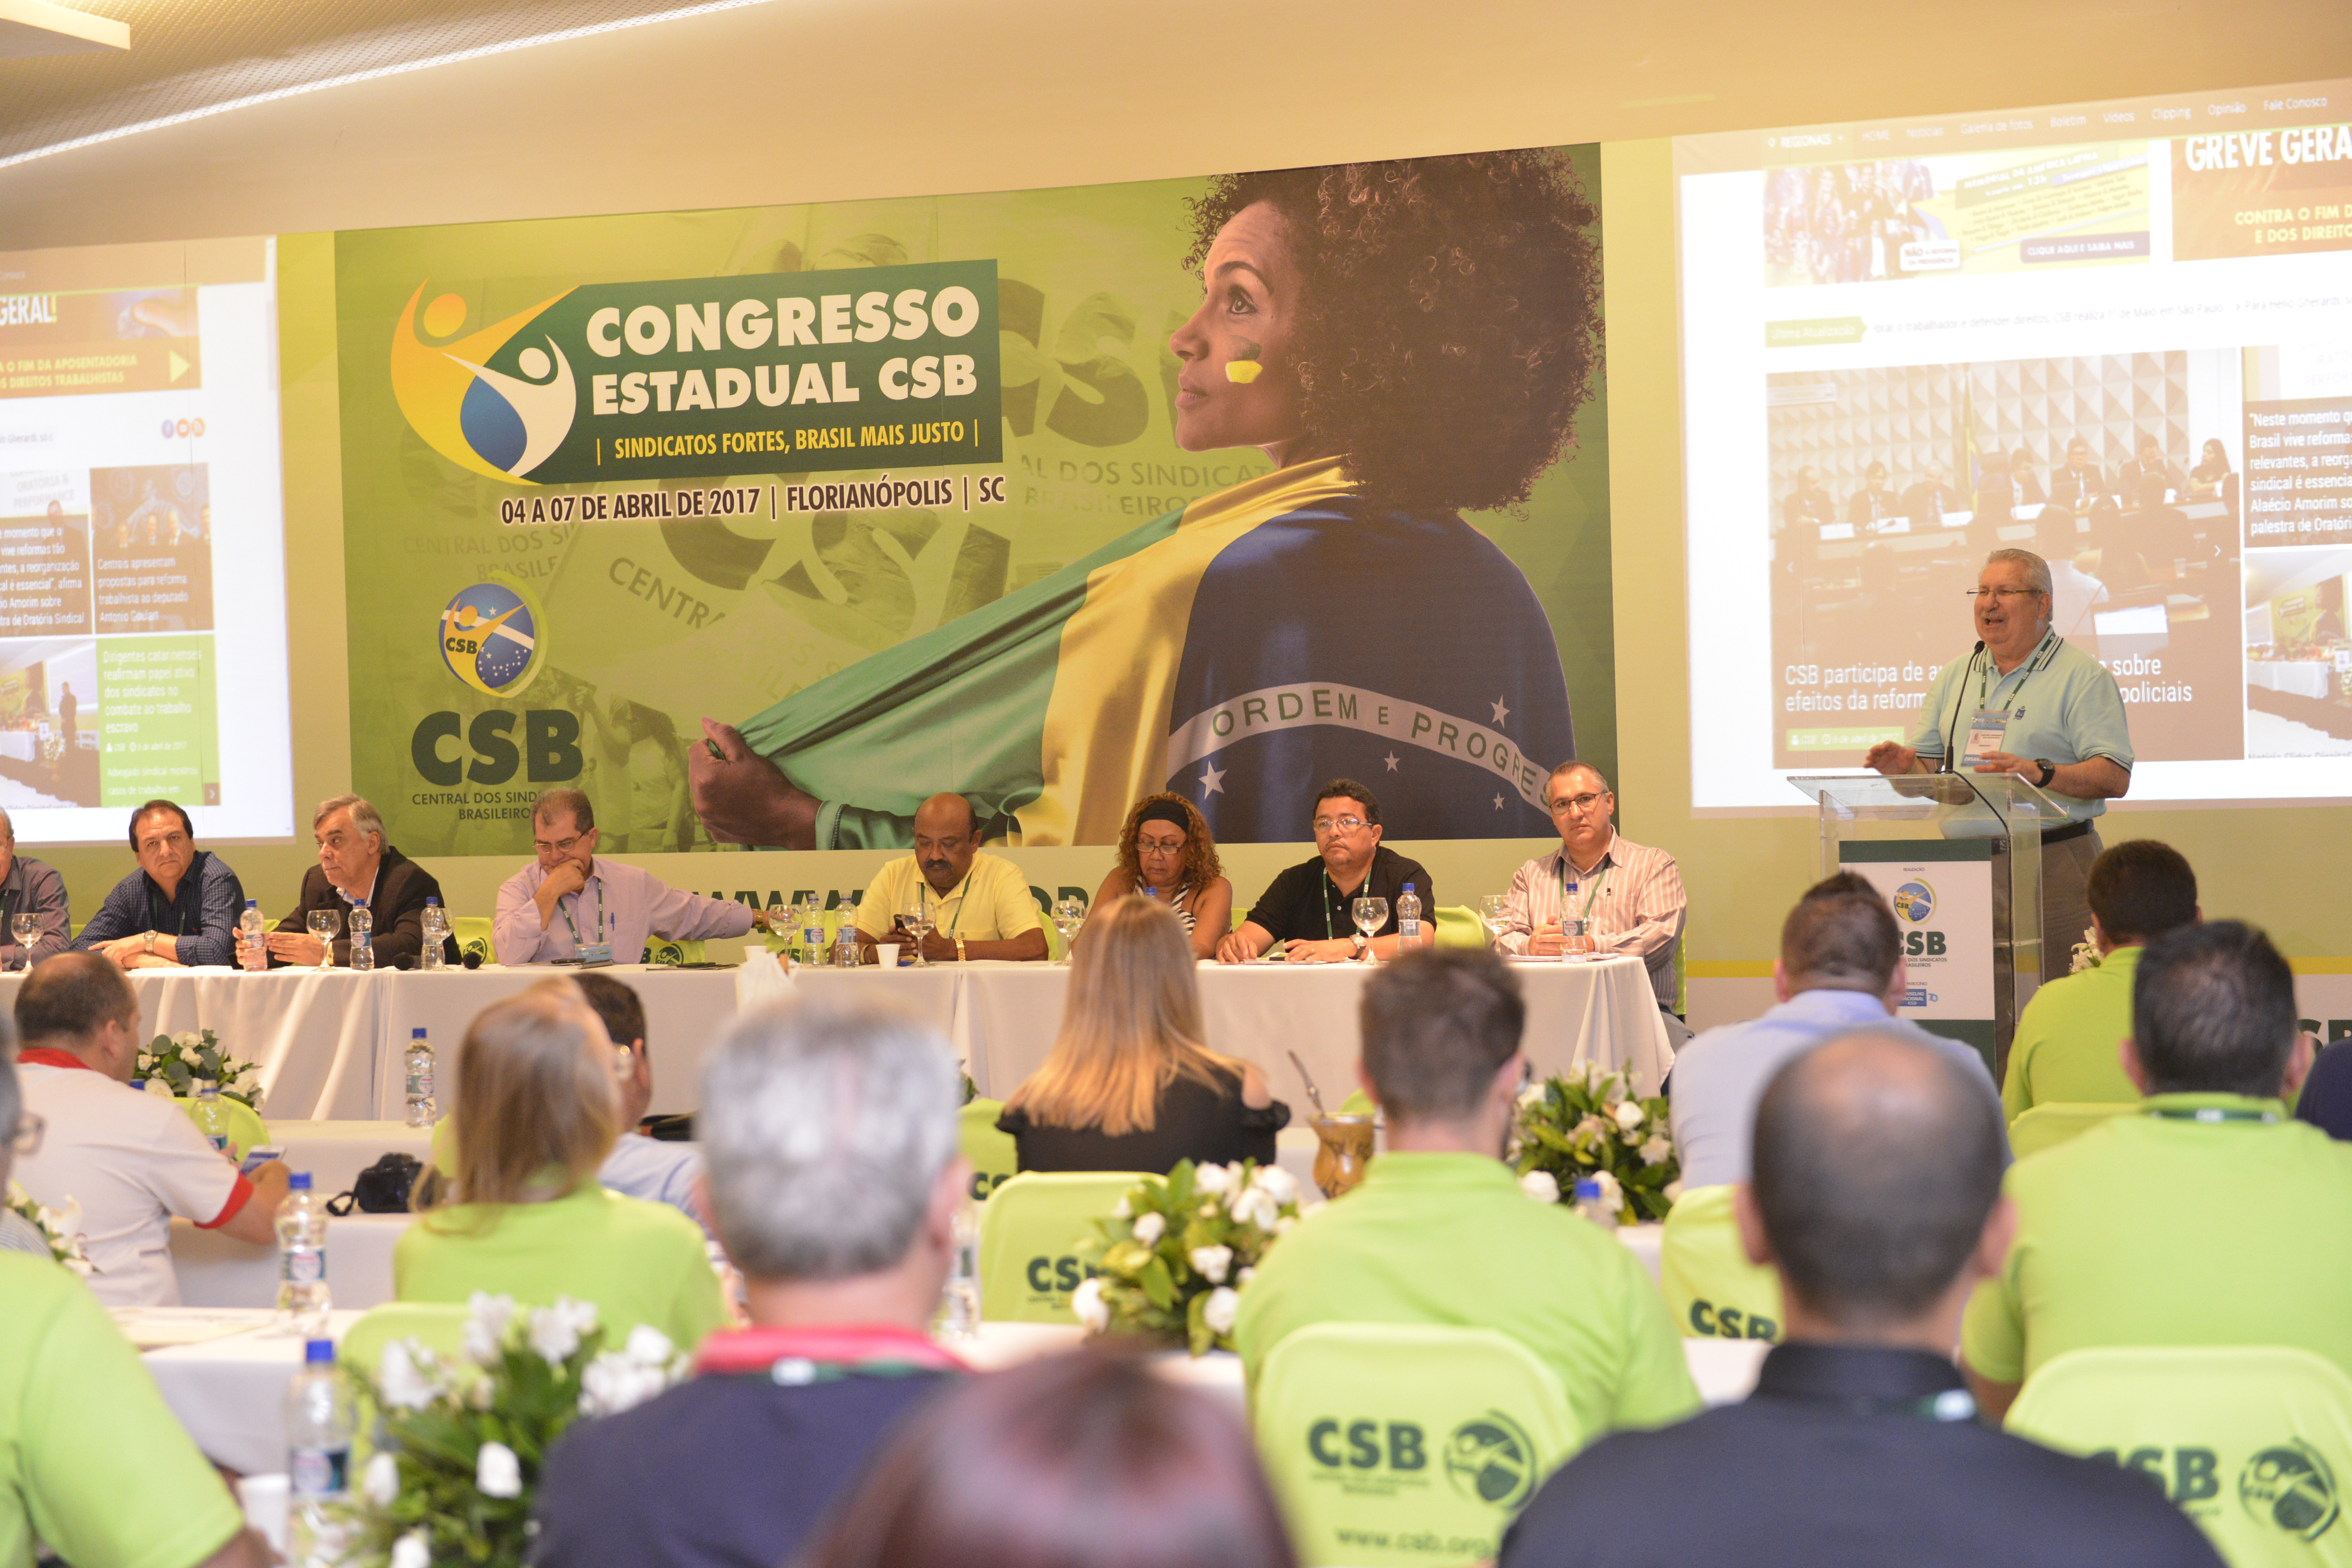 Veja a avaliação dos participantes do Congresso Estadual da CSB Santa Catarina e se prepare para os próximos